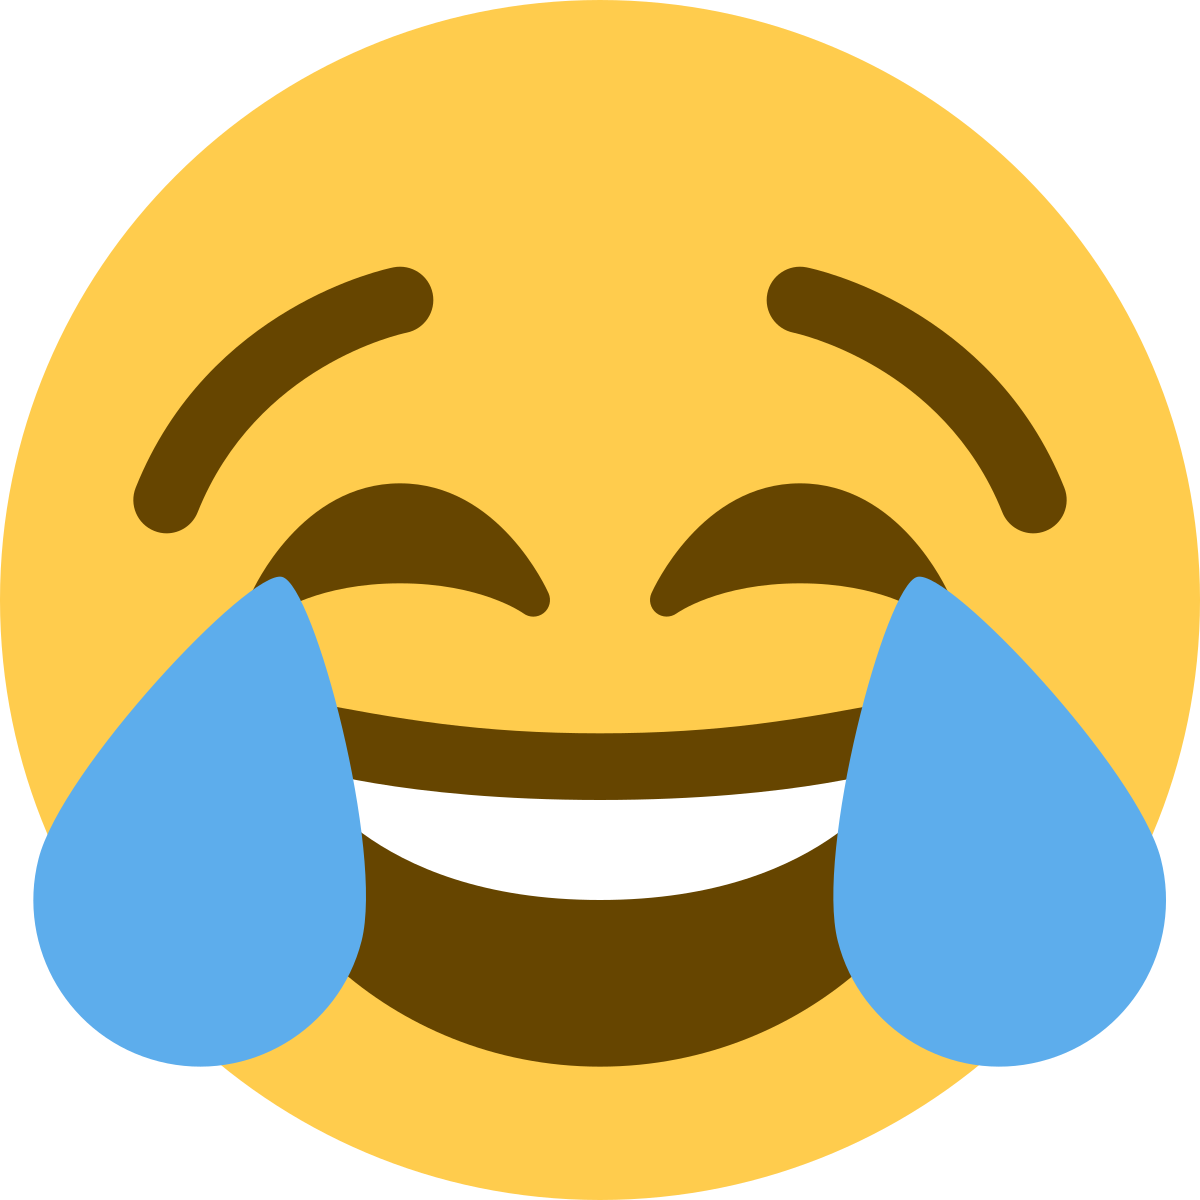 A laughing emoji.